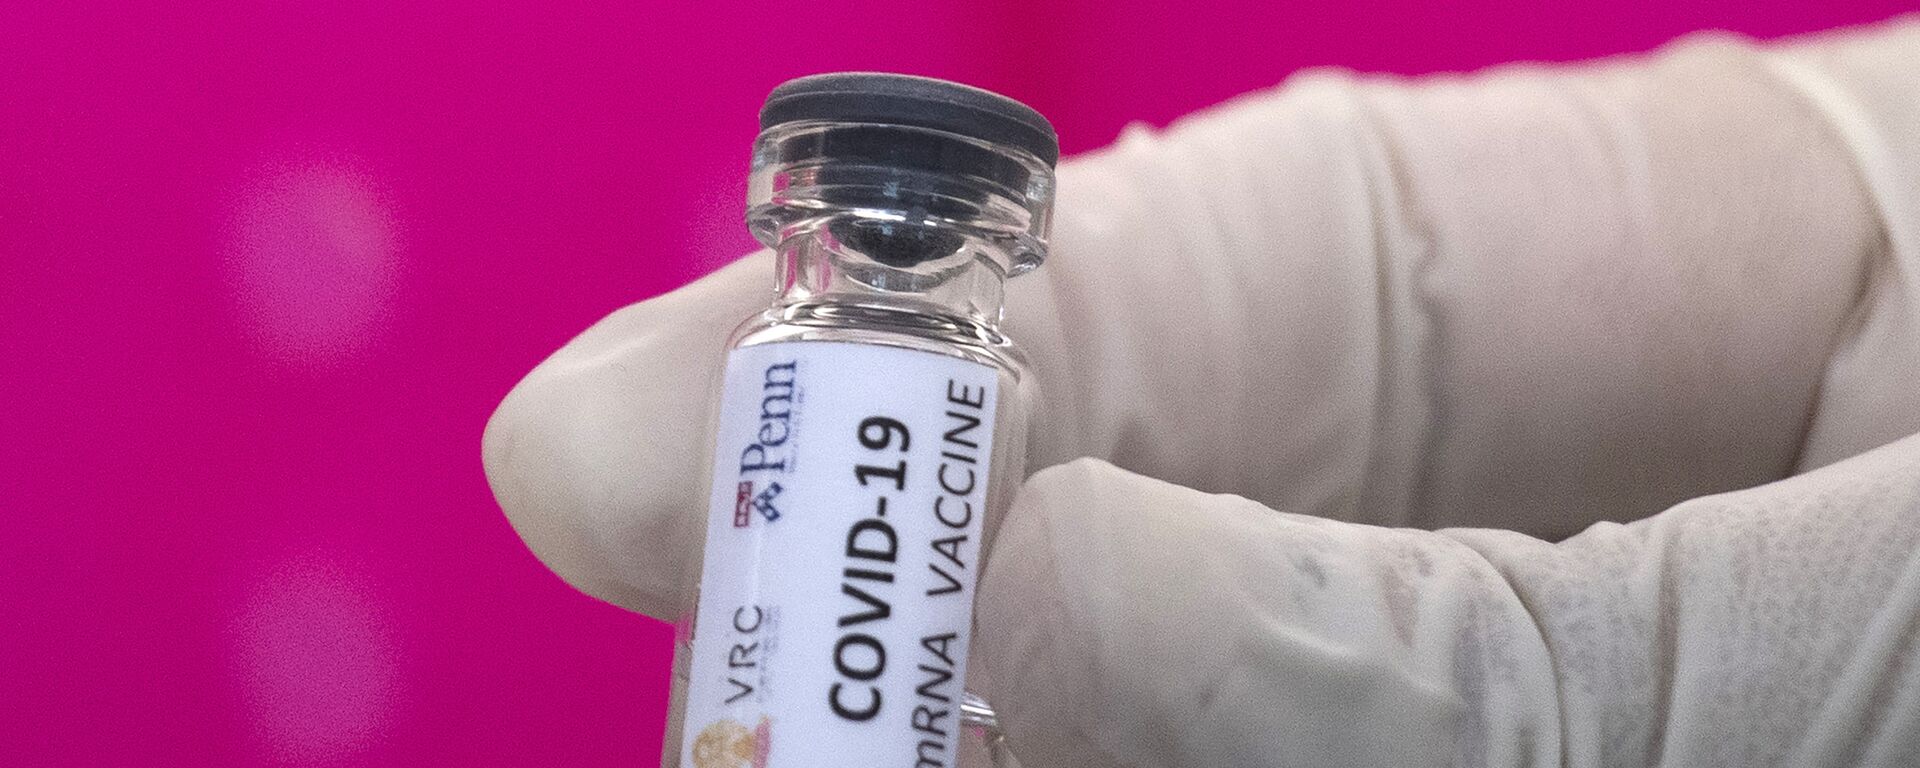 Вакцина от COVID-19 во время тестирования в исследовательском центре вакцин - Sputnik Արմենիա, 1920, 15.03.2021